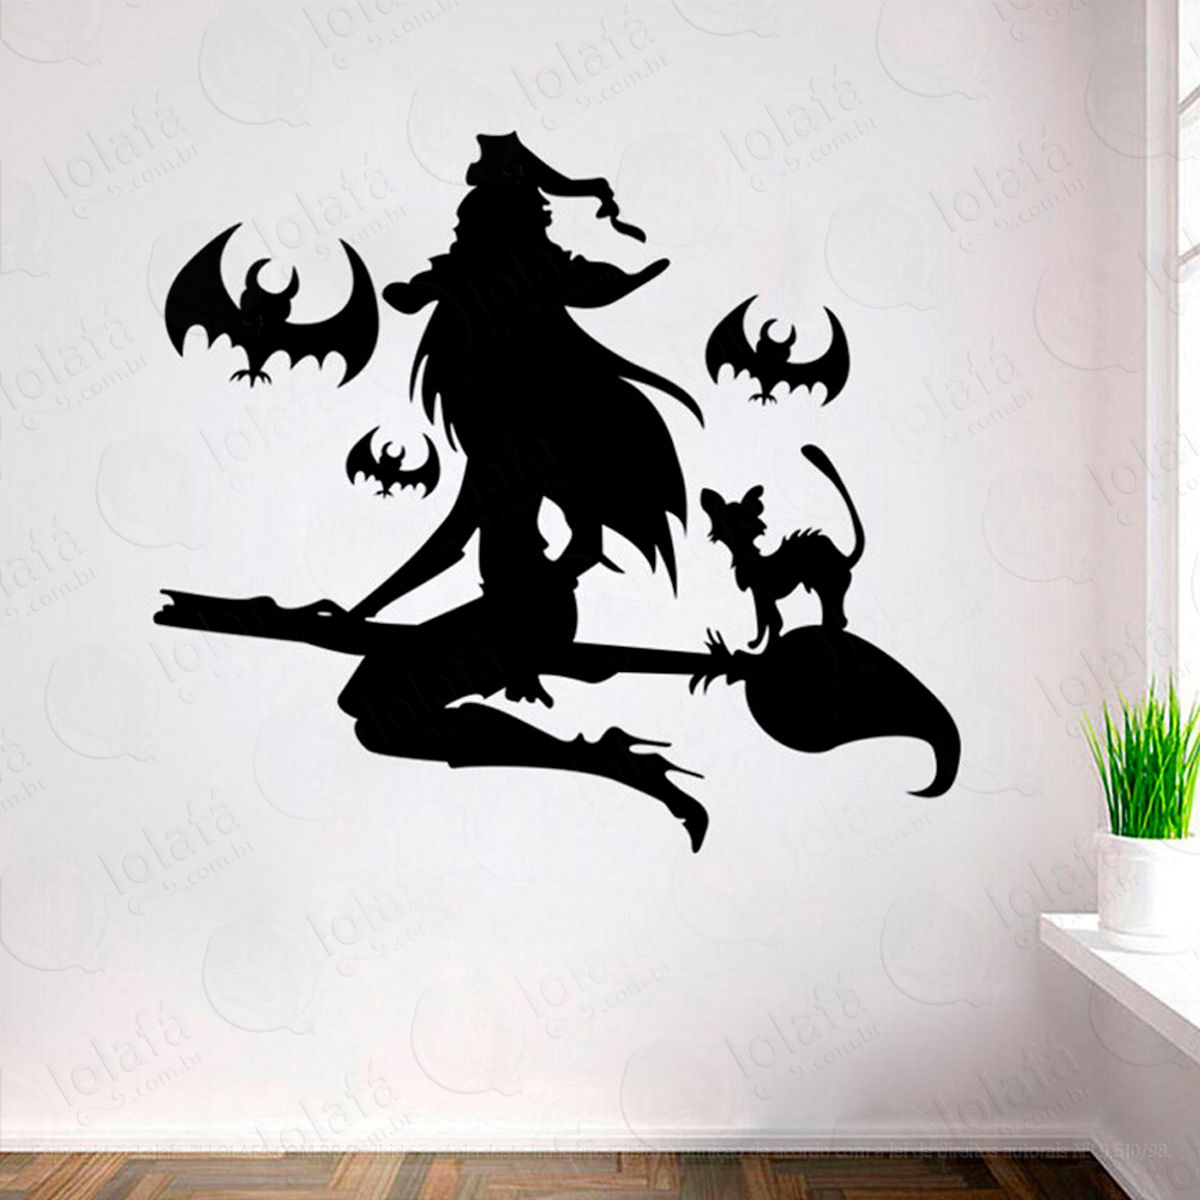 bruxa e gatos na vassoura adesivo de parede decorativo para casa, sala, quarto e vidro - mod:13